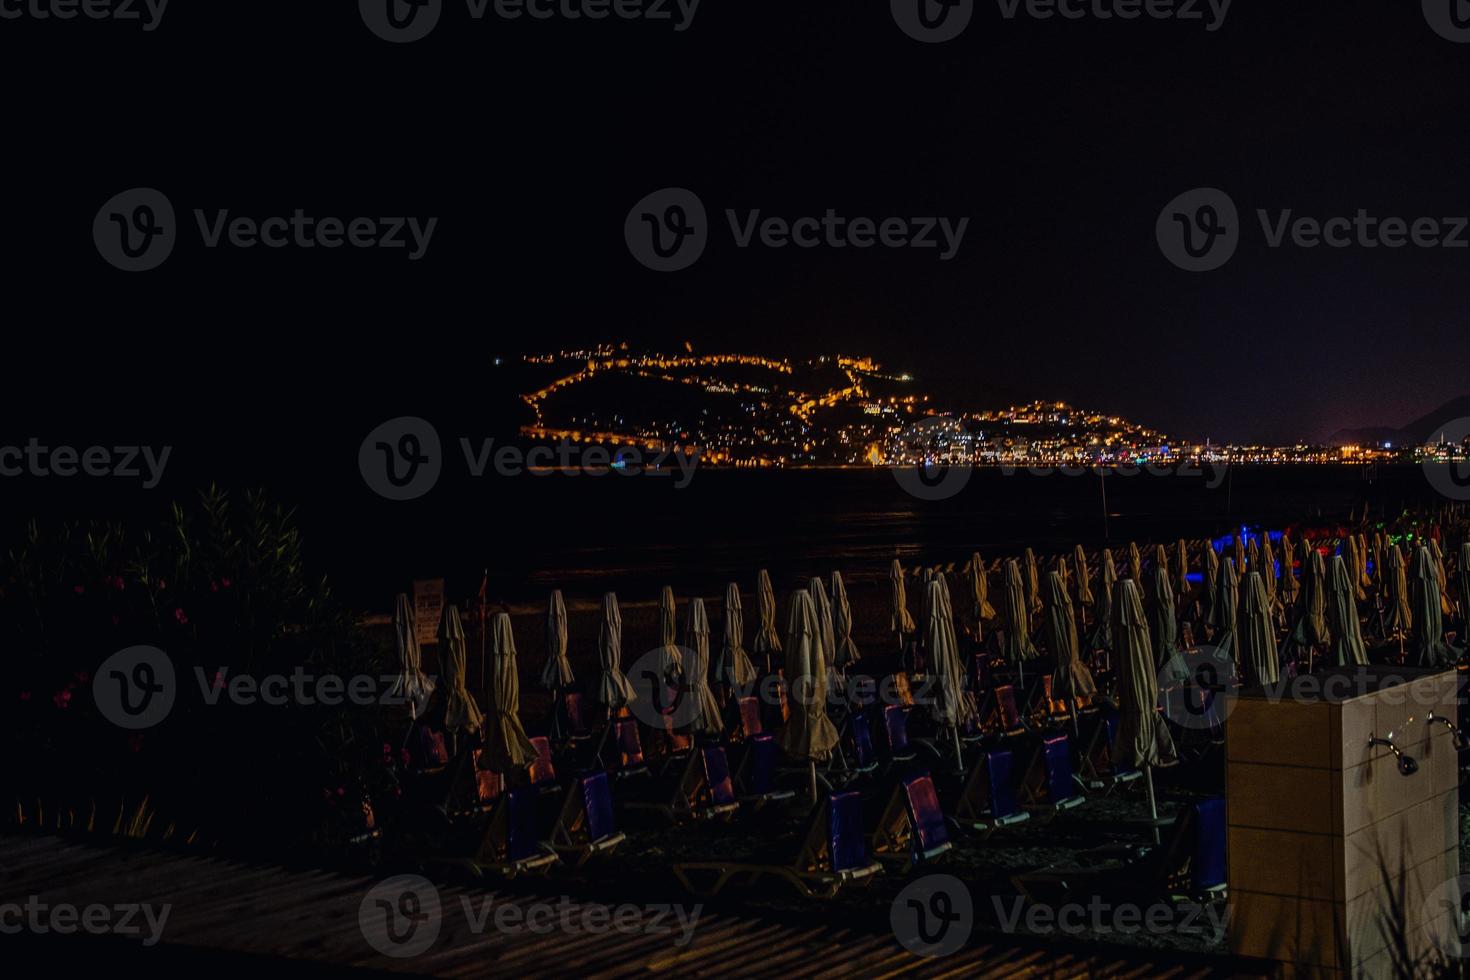 notte Visualizza di il Turco città di alanya con luci su il collina foto